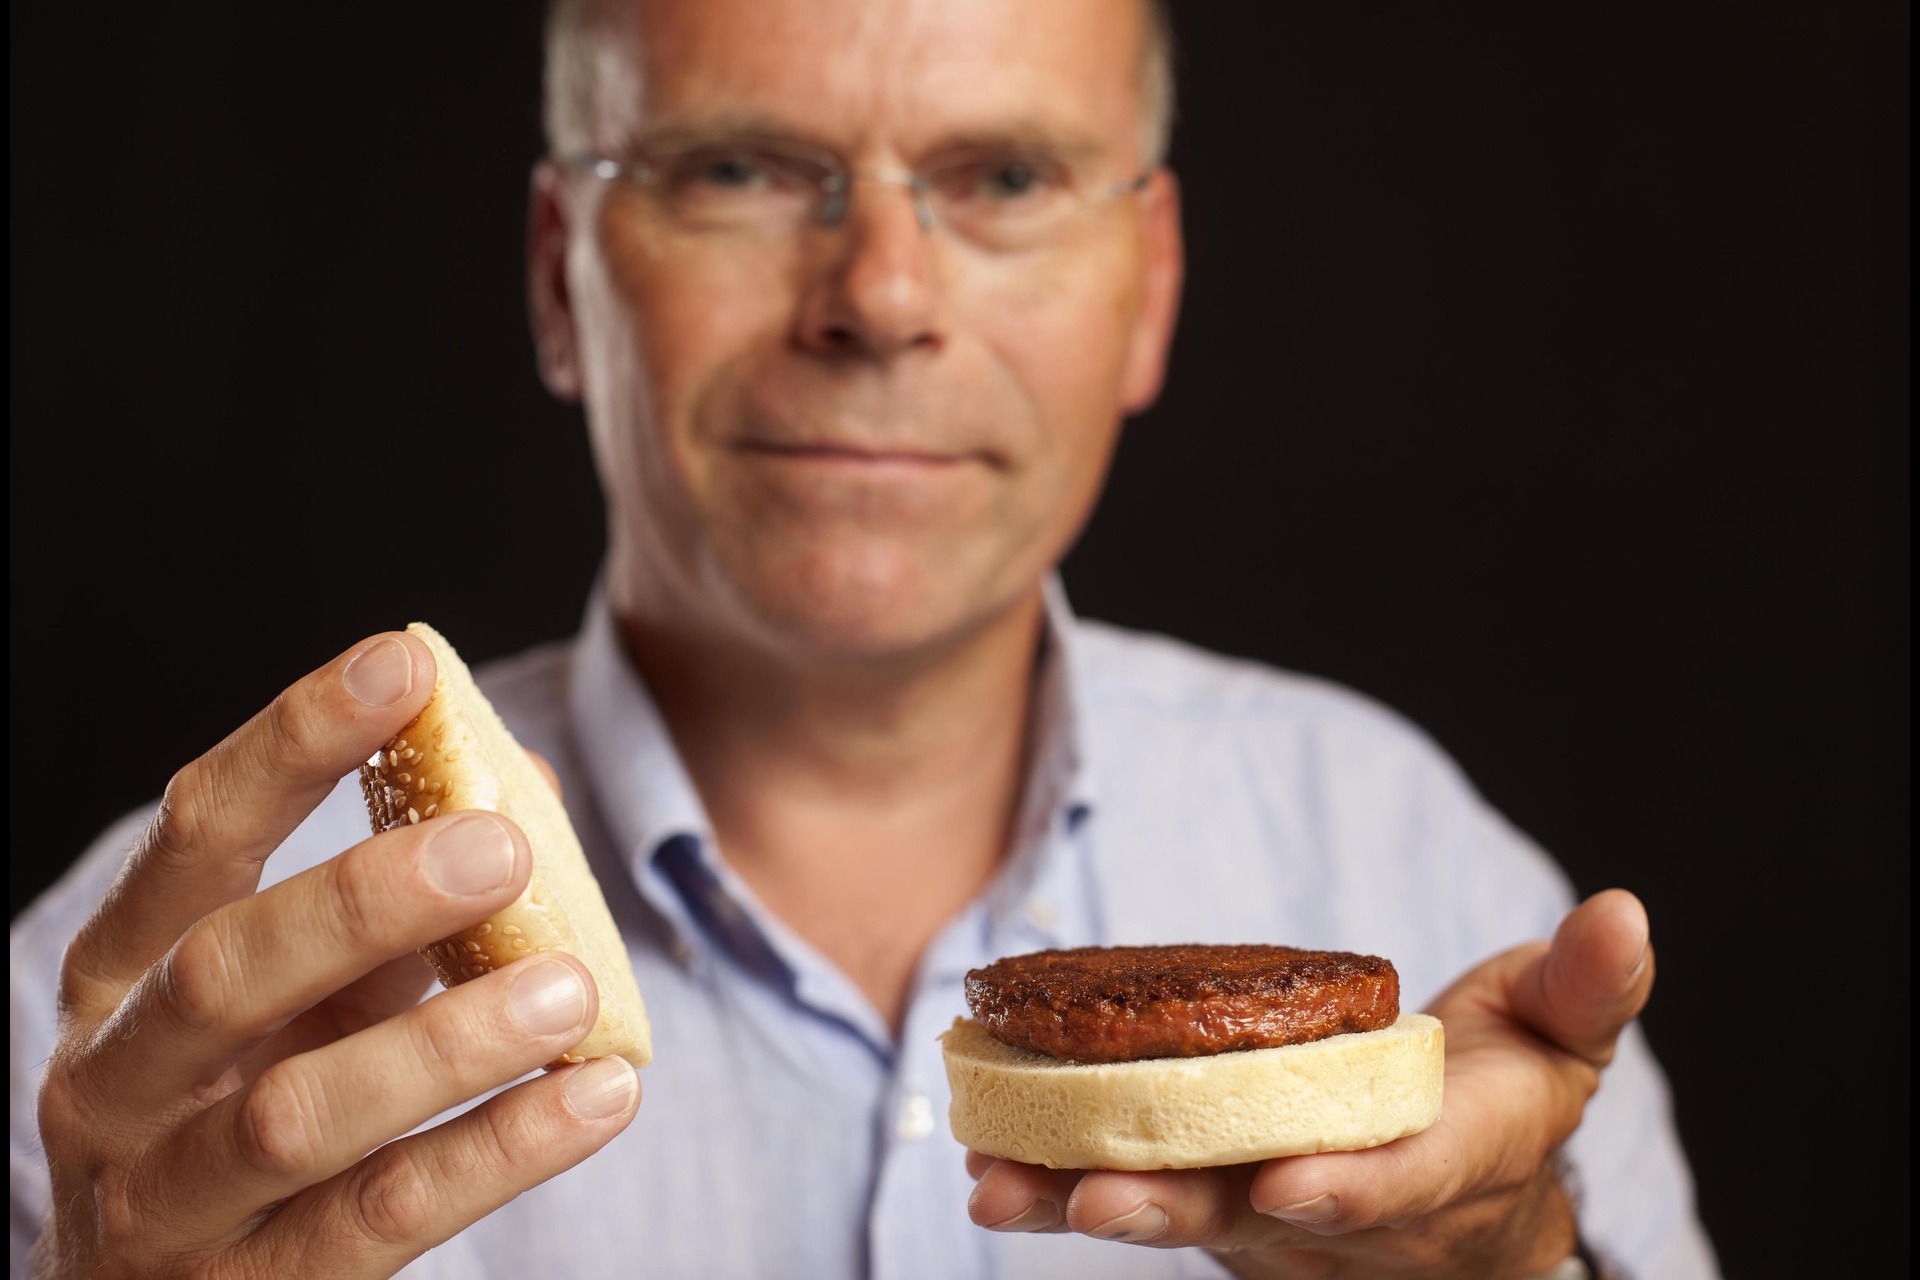 Viljelty liha: Viljellyn lihan "isä" Mark Post paljastaa maailmalle ensimmäisen soluviljelyn kautta tuotetun hampurilaisen